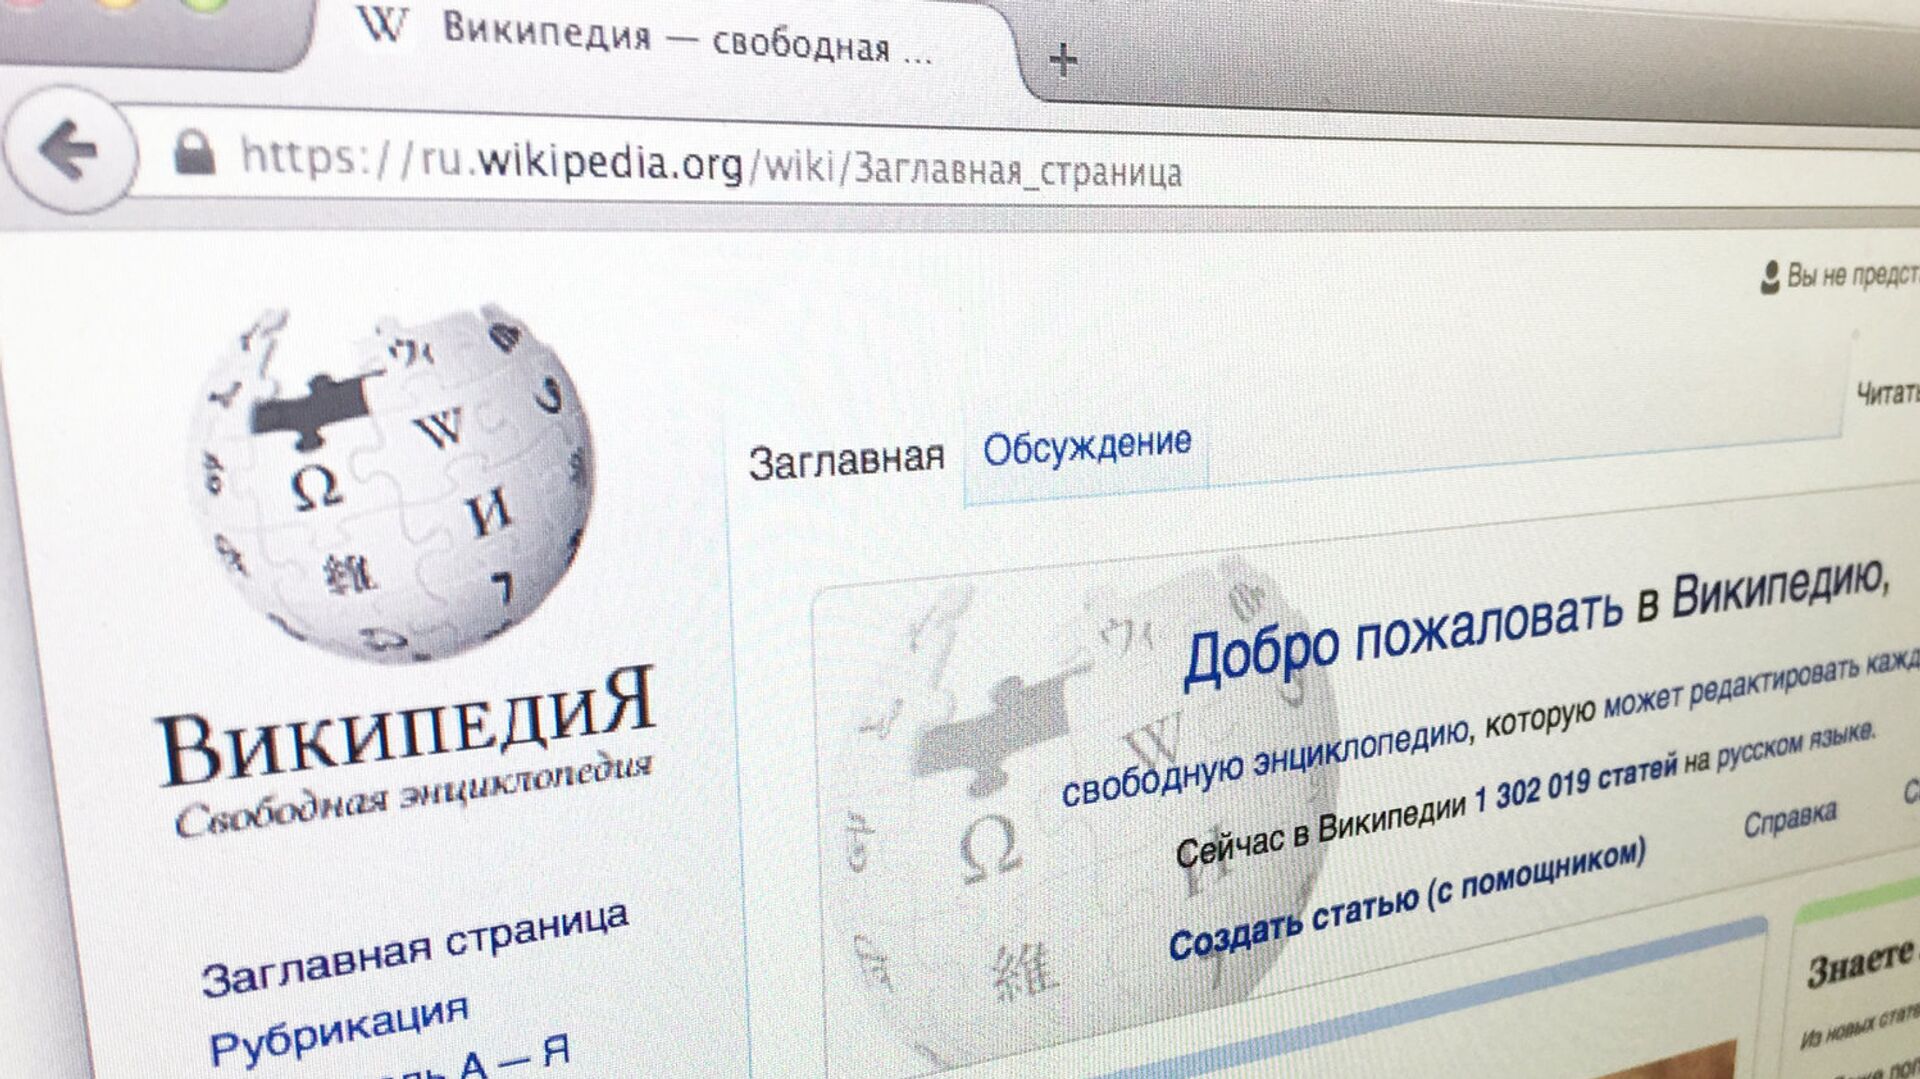 «Википедию» оштрафовали на 3 млн рублей за неудаление информации